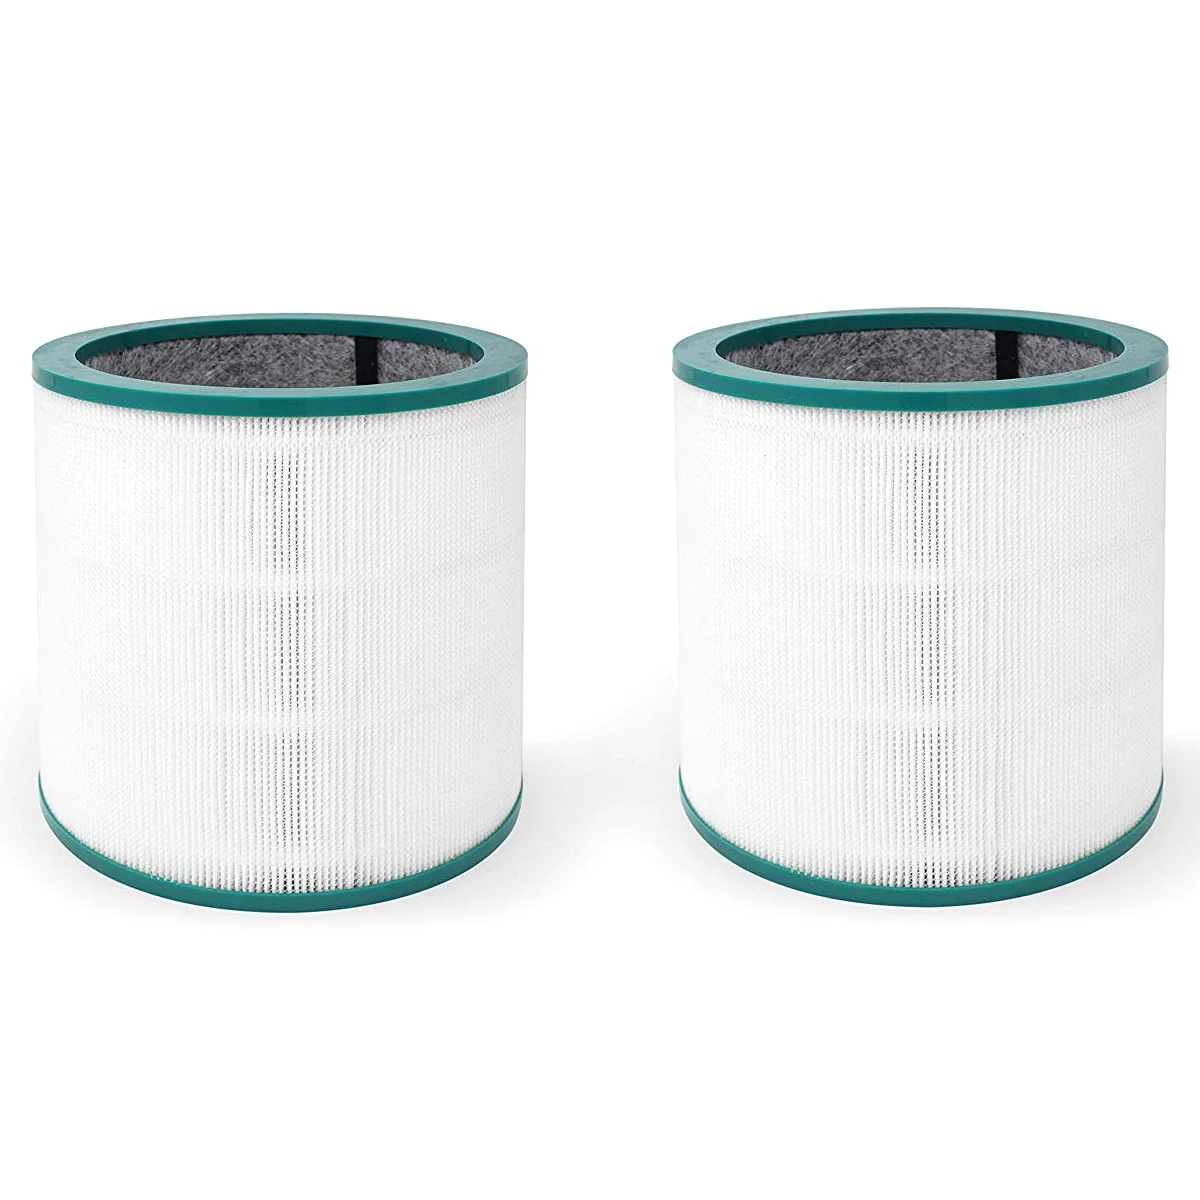 Воздухоочистители фильтр для dyson башня очиститель для Tp02 и Tp03 моделей. Сравните с Частью #968126-03. (Упаковка из 2)